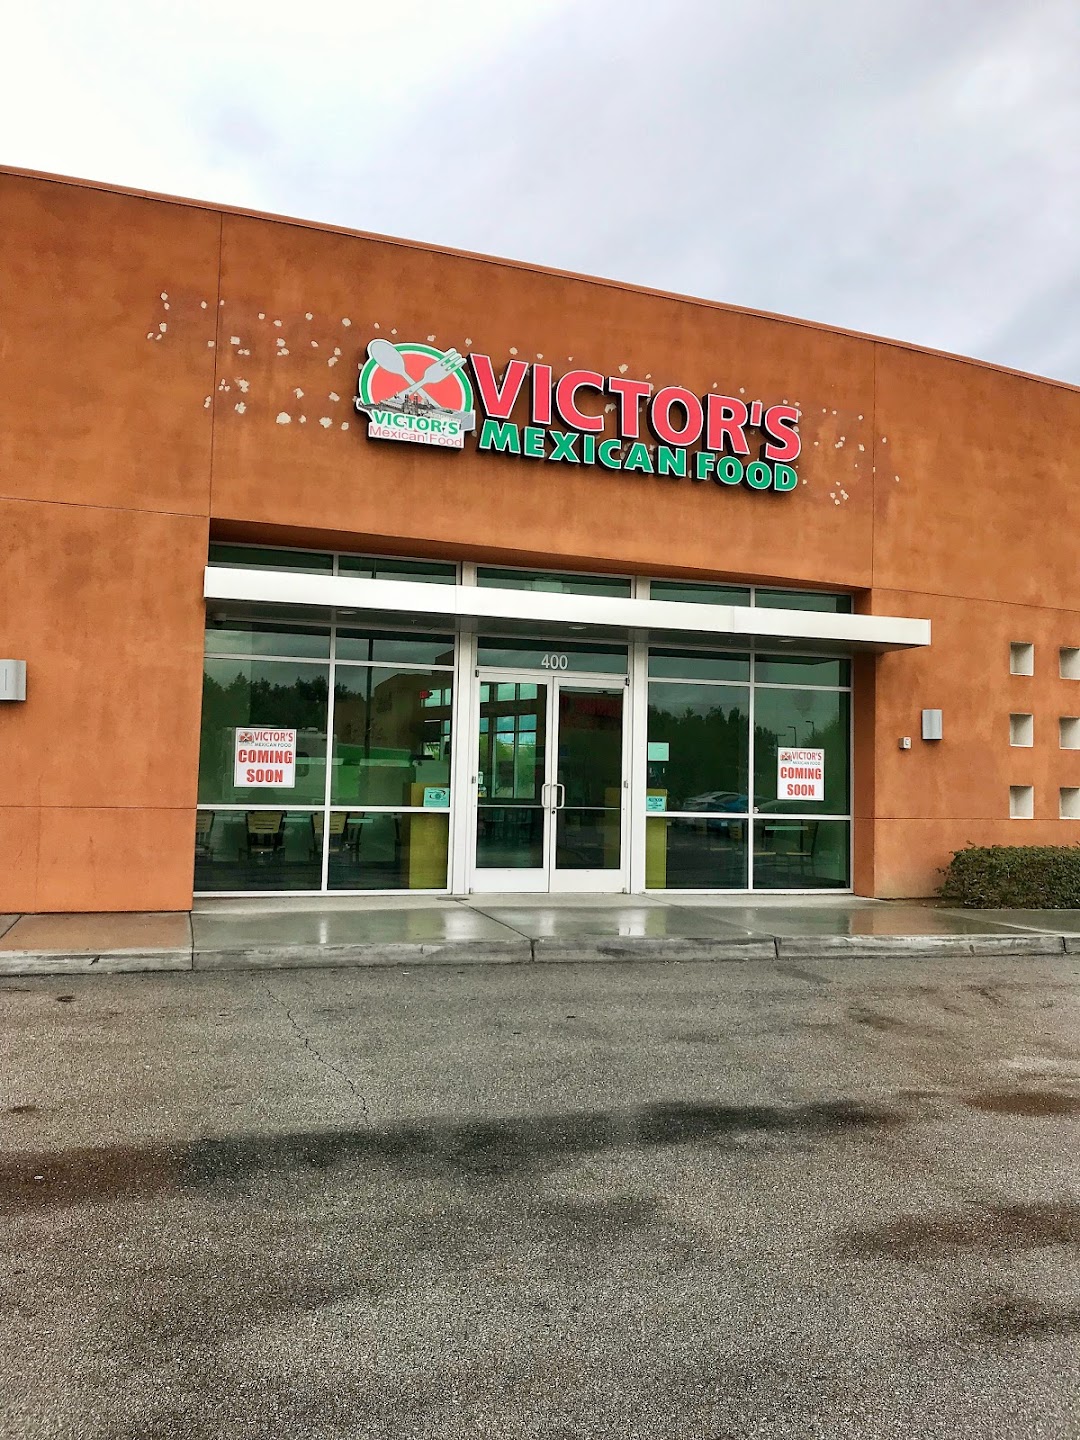 Victors Mexican Food